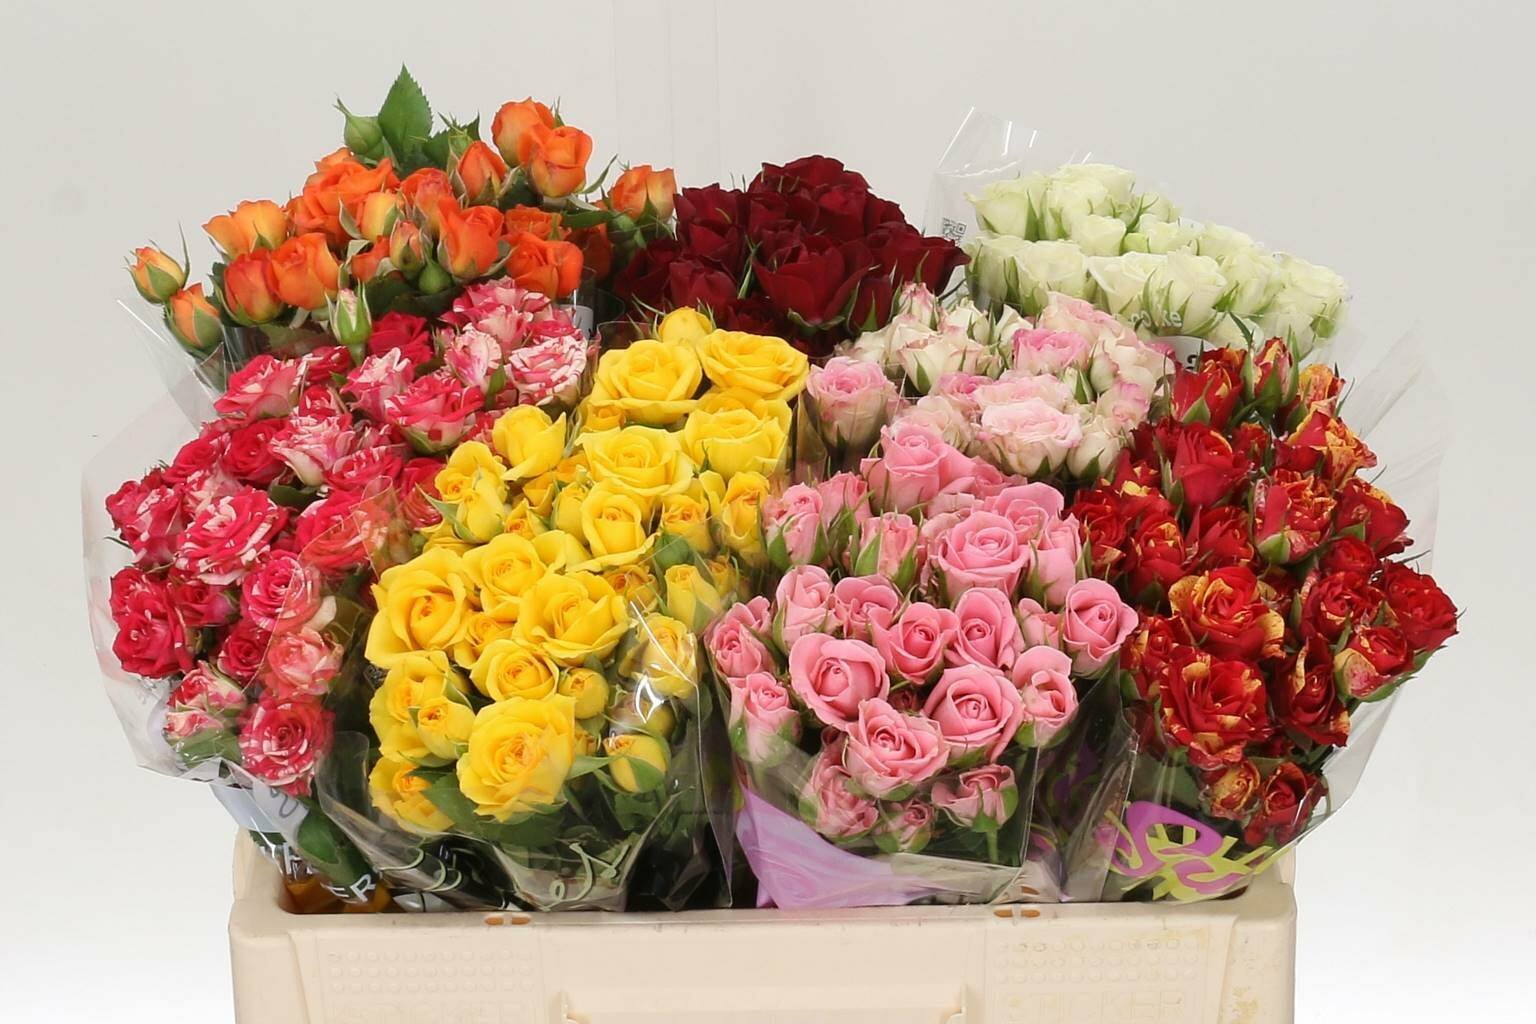 Сбалансированный заказ для крупного клиента - 3-4 коробки красной и белой розы, 1-2 цветной и еще 2-3 миксовых